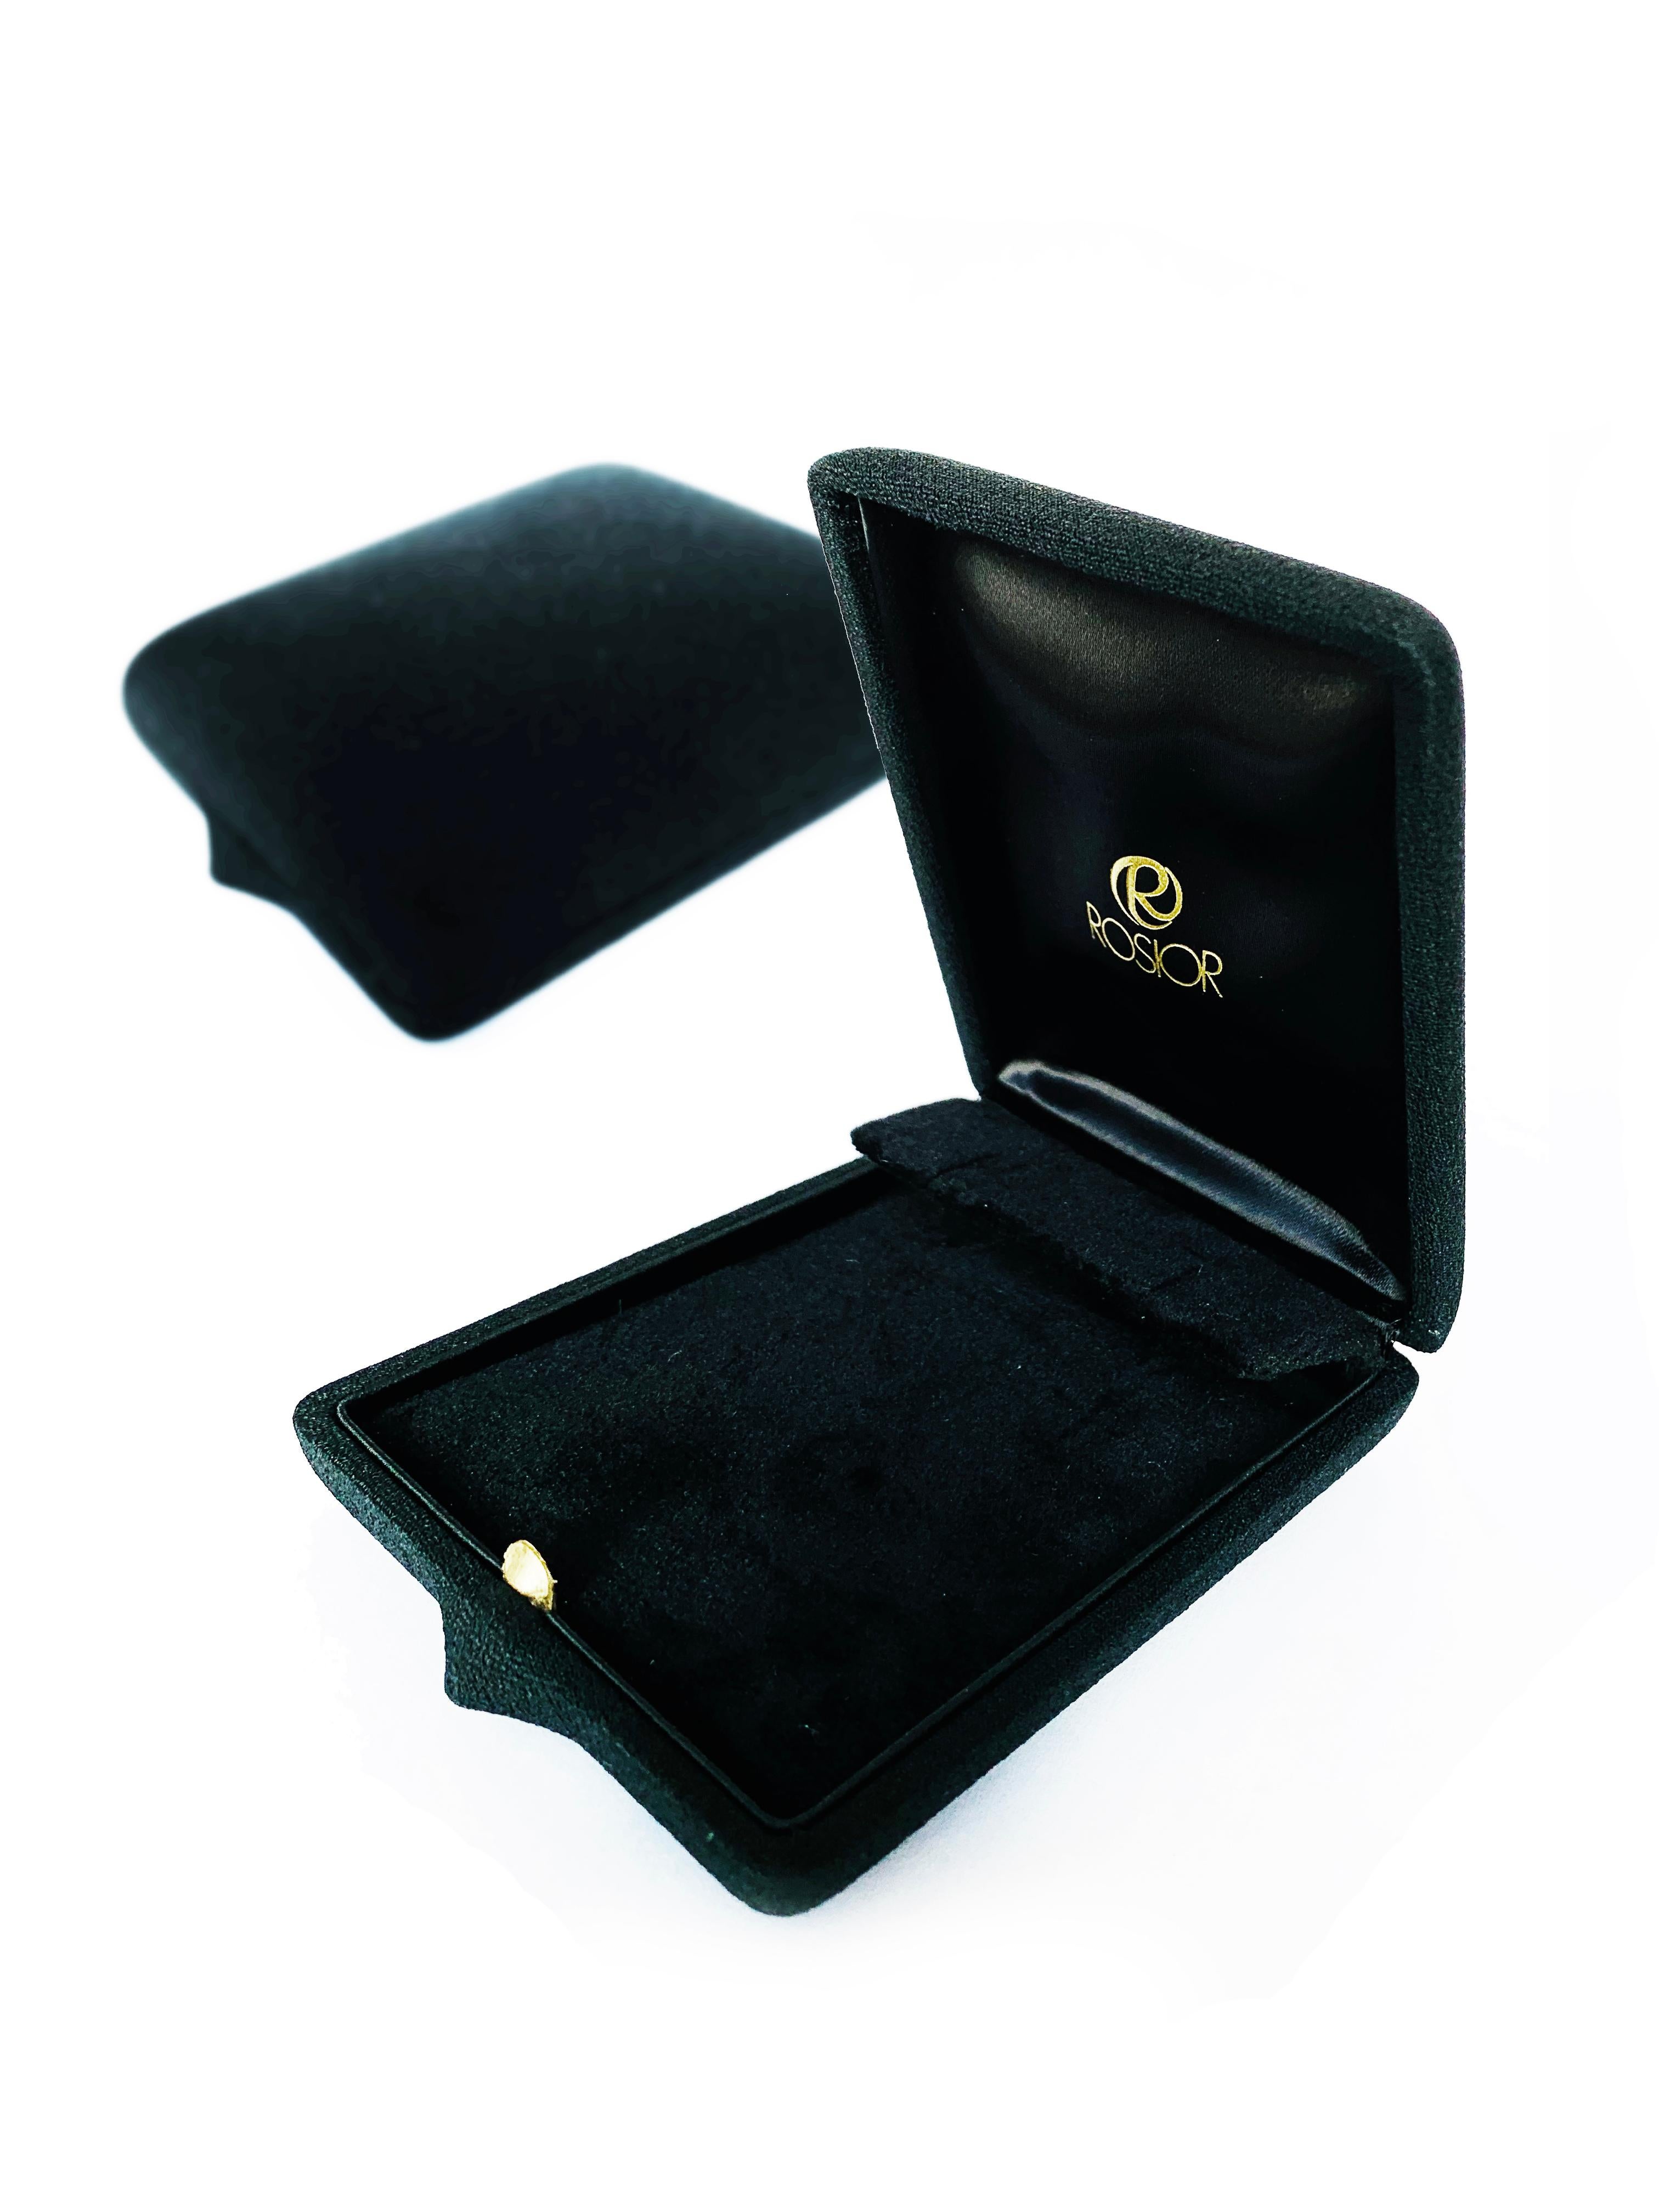 Women's or Men's Rosior Contemporary White Gold Diamond Dangle Earrings